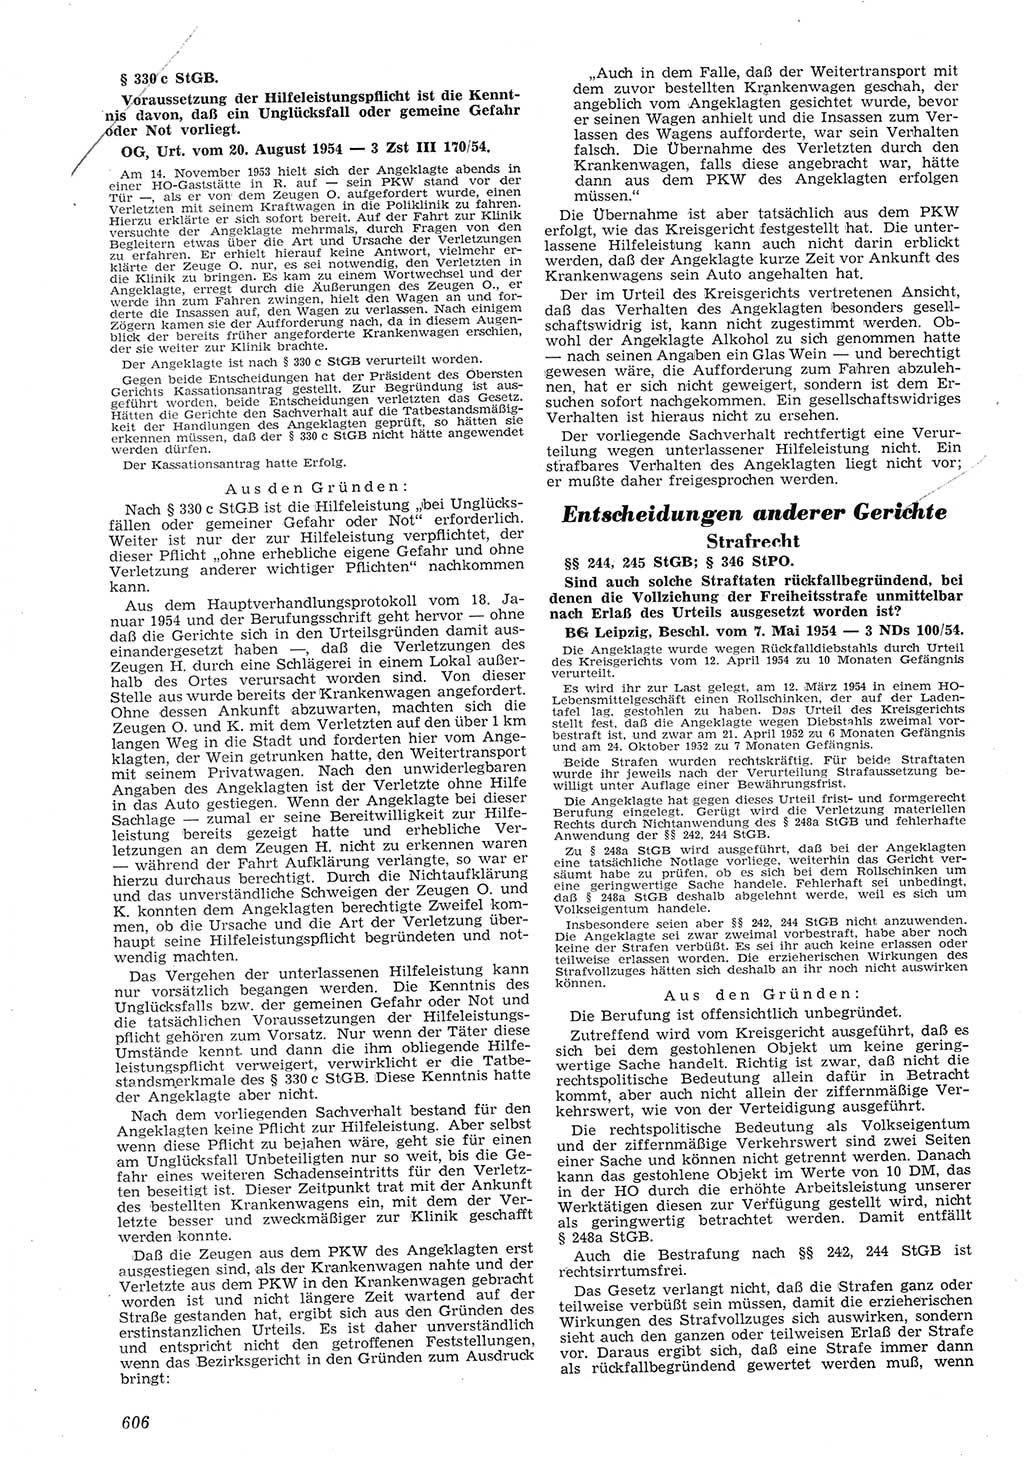 Neue Justiz (NJ), Zeitschrift für Recht und Rechtswissenschaft [Deutsche Demokratische Republik (DDR)], 8. Jahrgang 1954, Seite 606 (NJ DDR 1954, S. 606)